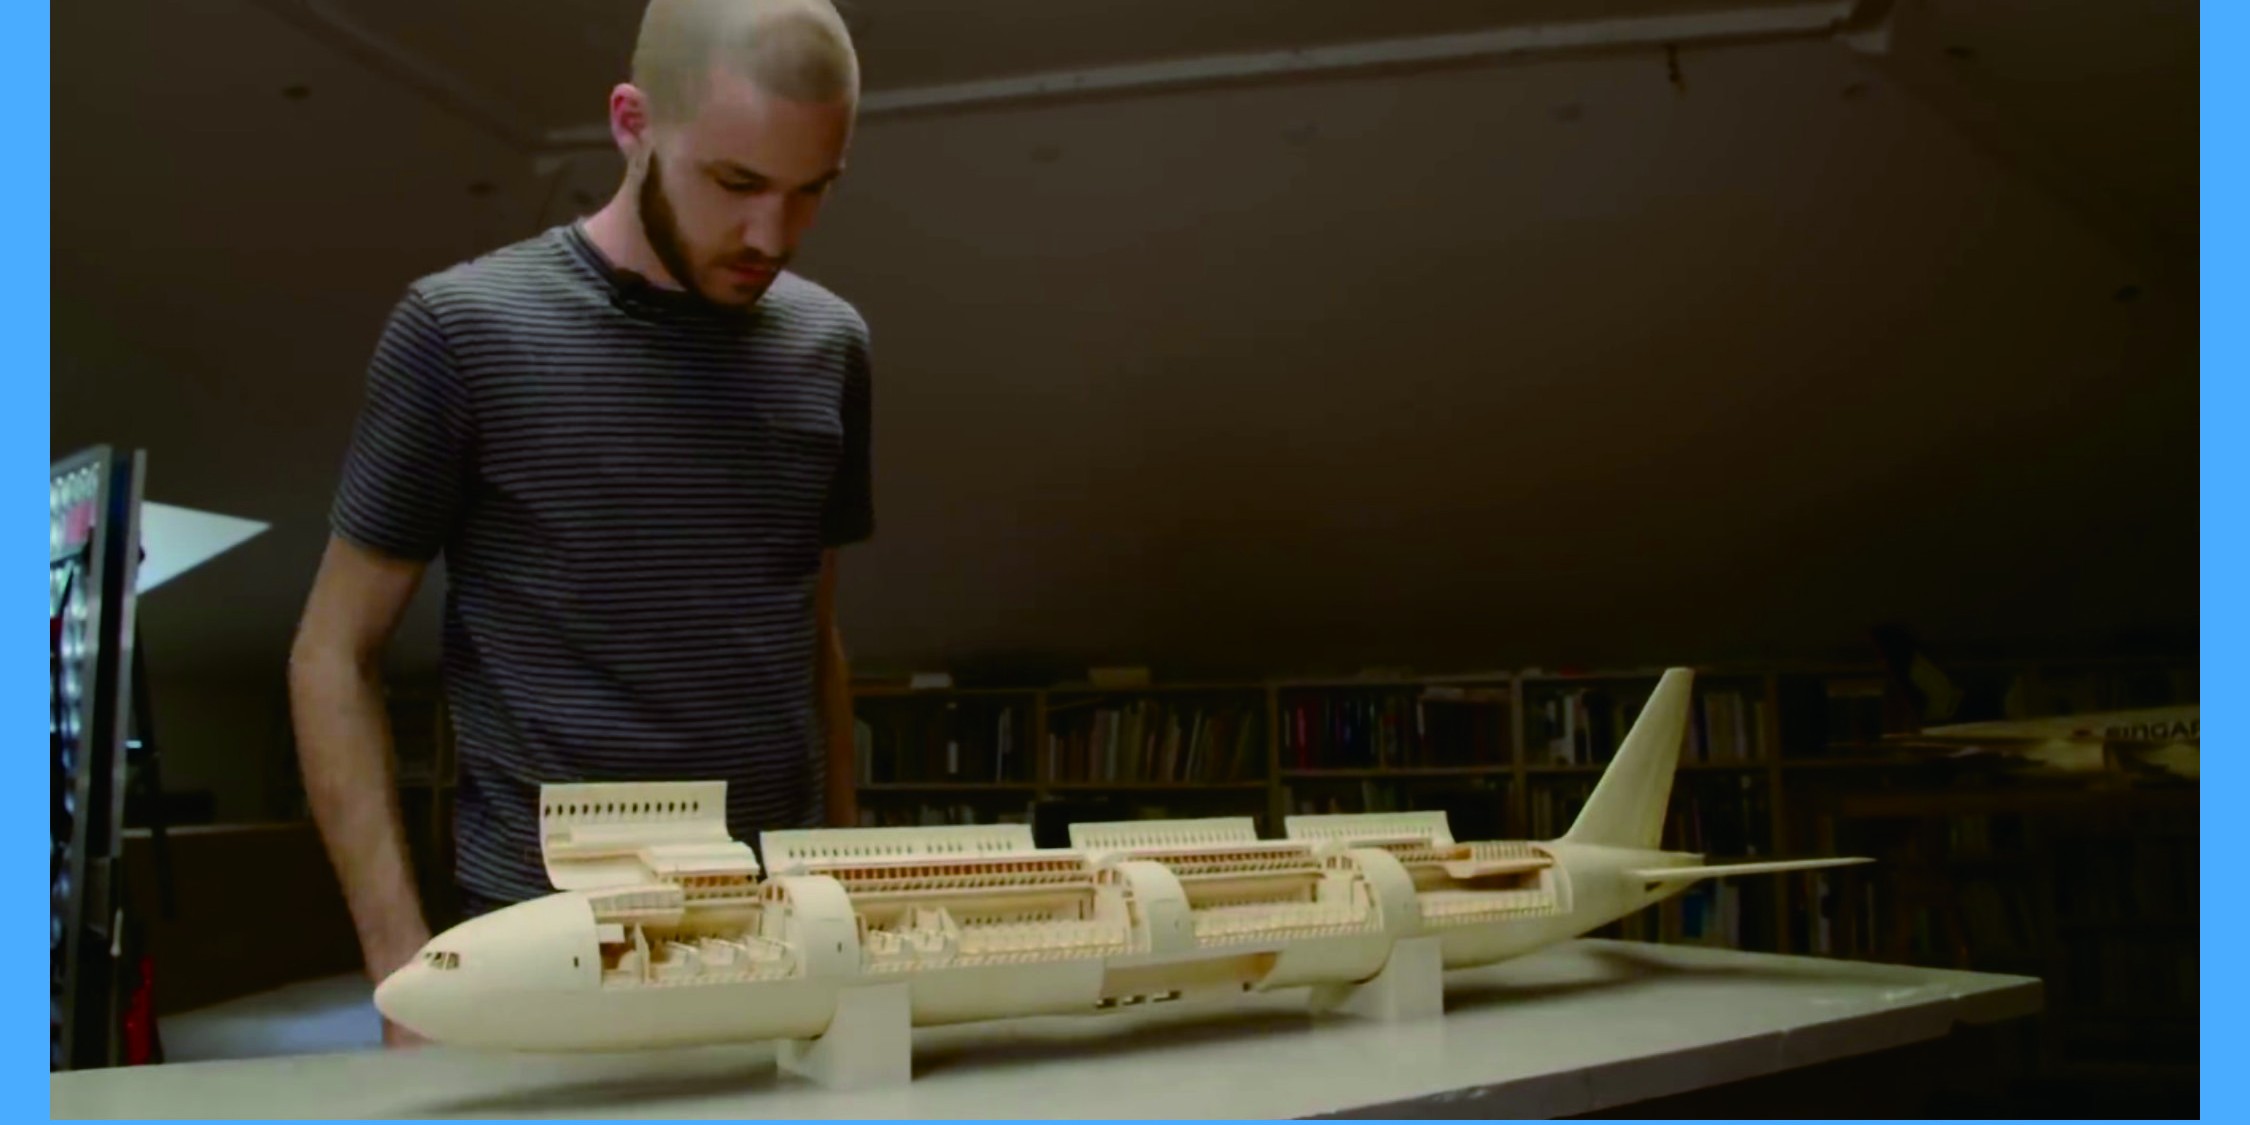 Proses pembuatan replika pesawat Boeing dari kertas ini menakjubkan